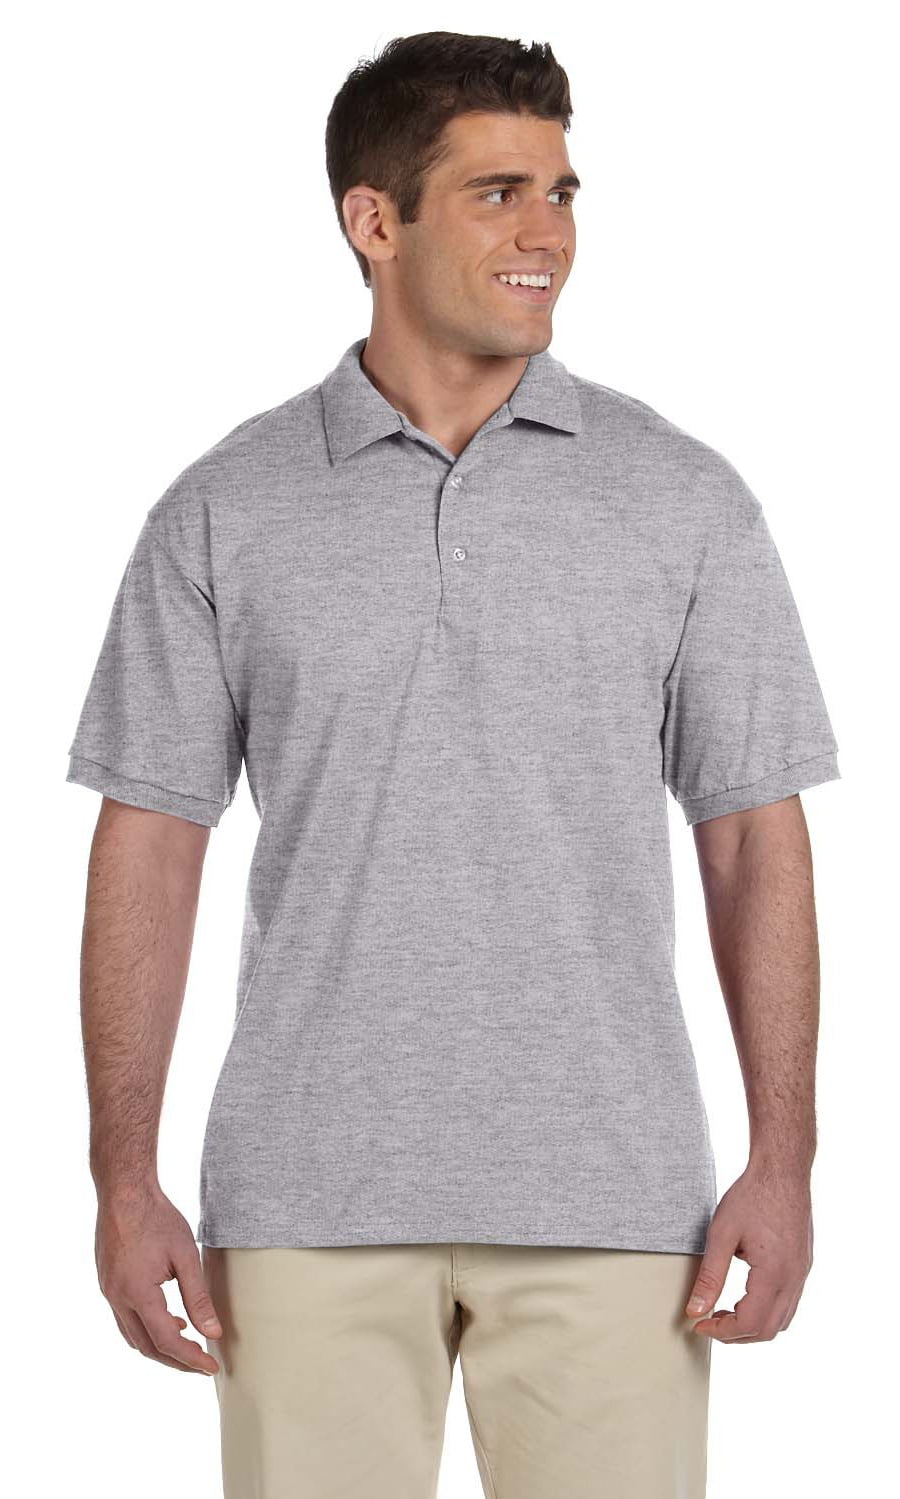 Gildan Adult Comfort Double-Needle Jersey Polo Shirt